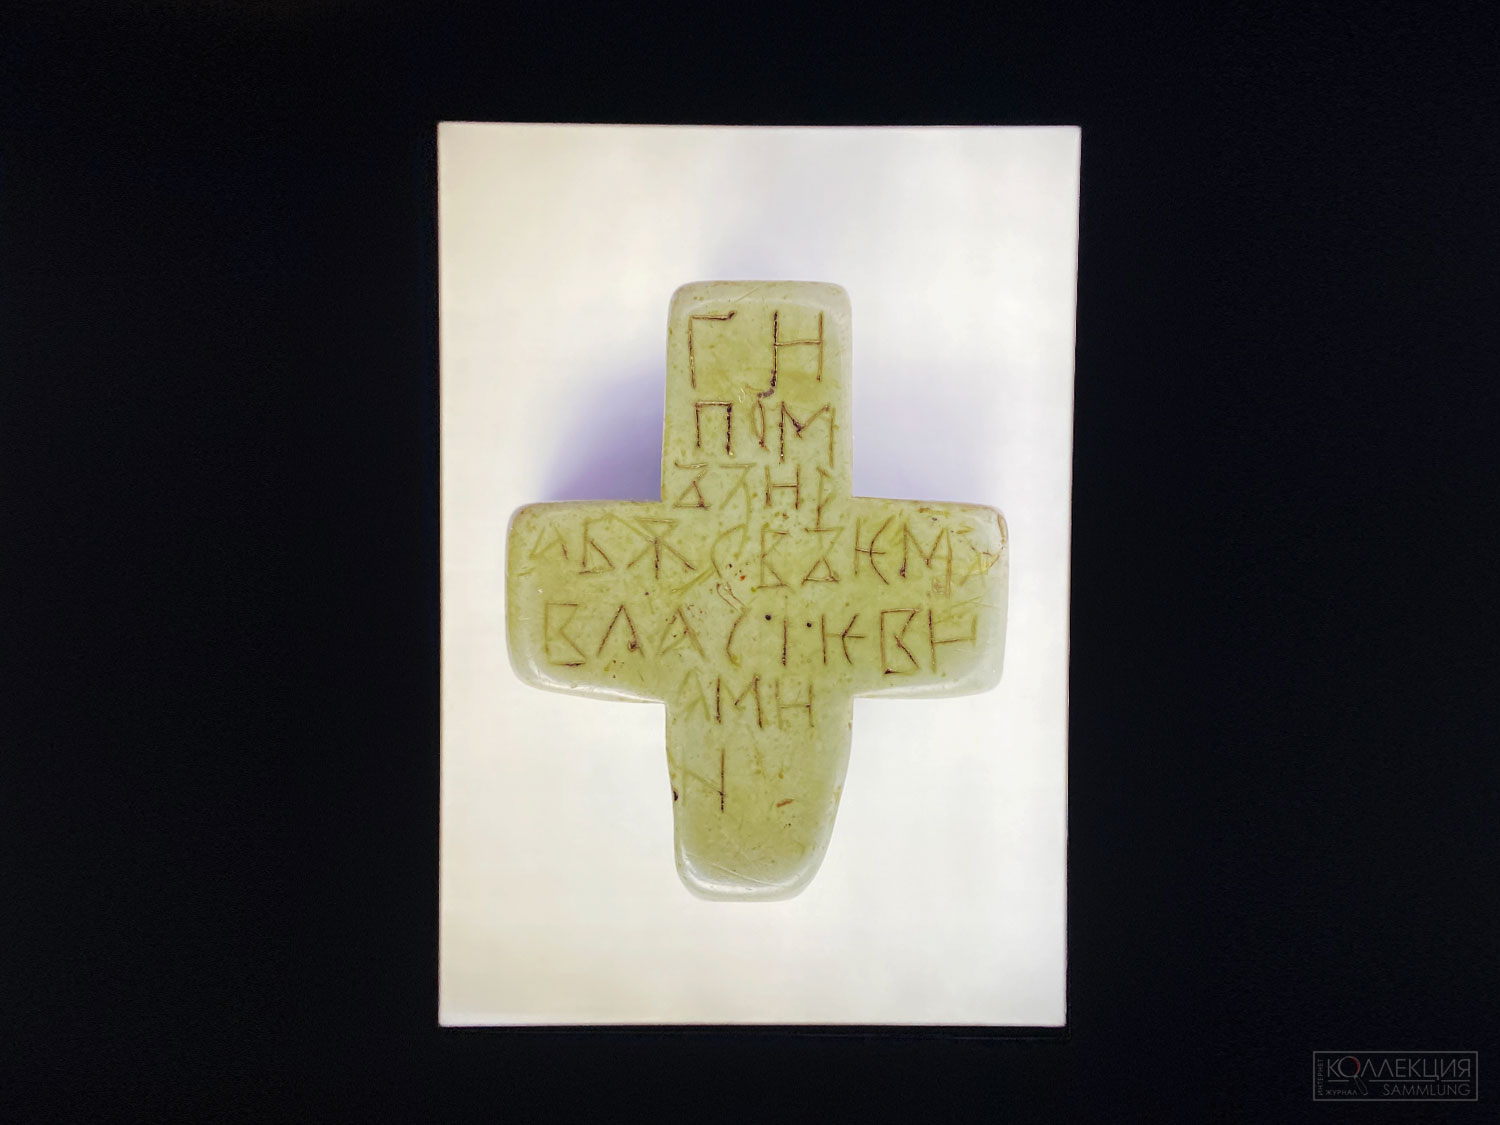 Крест нательный с благожелательной надписью. Конец XI - начало XII века. Обнаружен в 1956 году в Пировском селище, Владимирская область